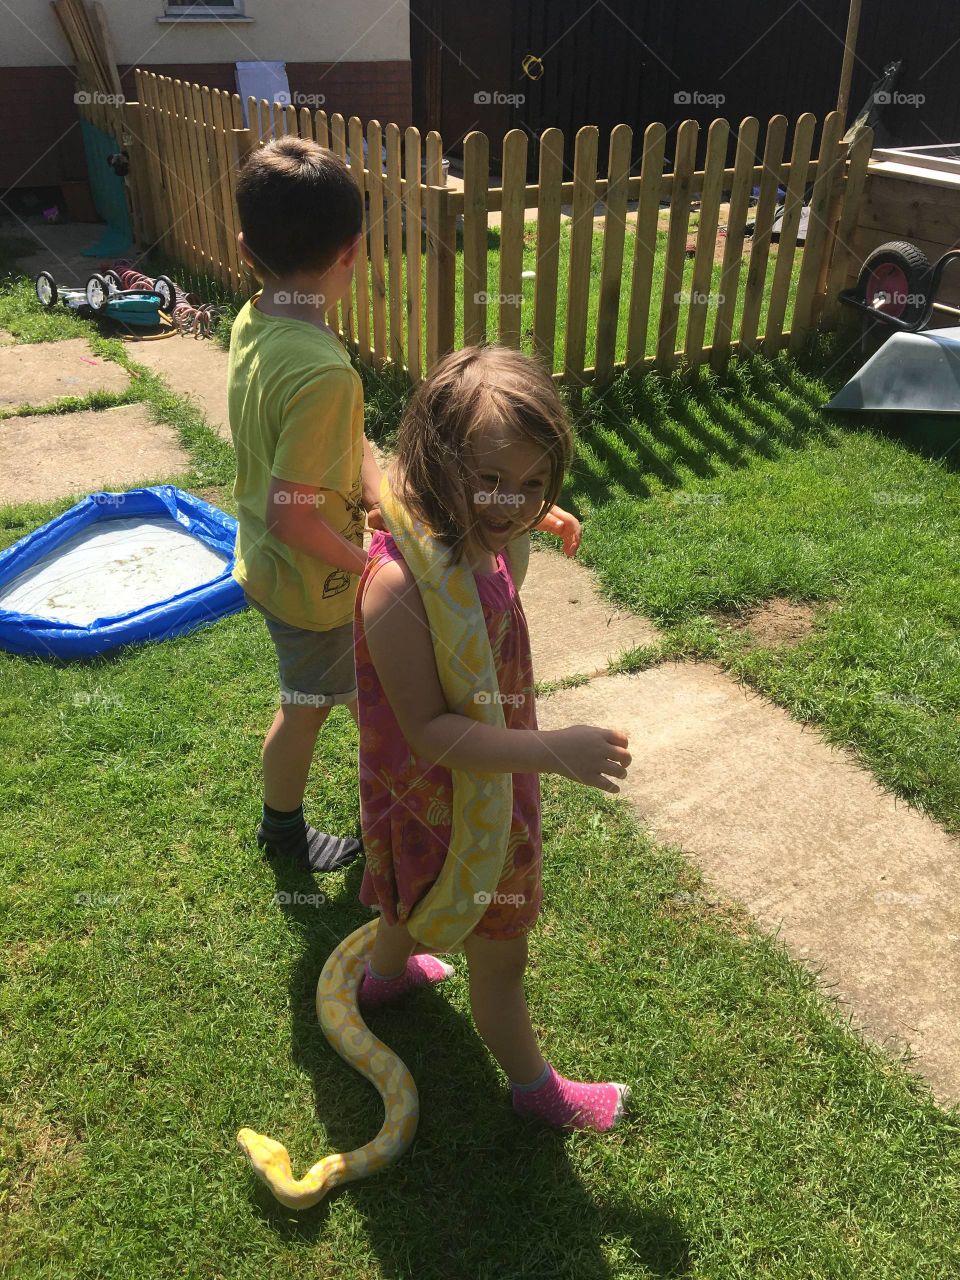 Holding the snake in the garden